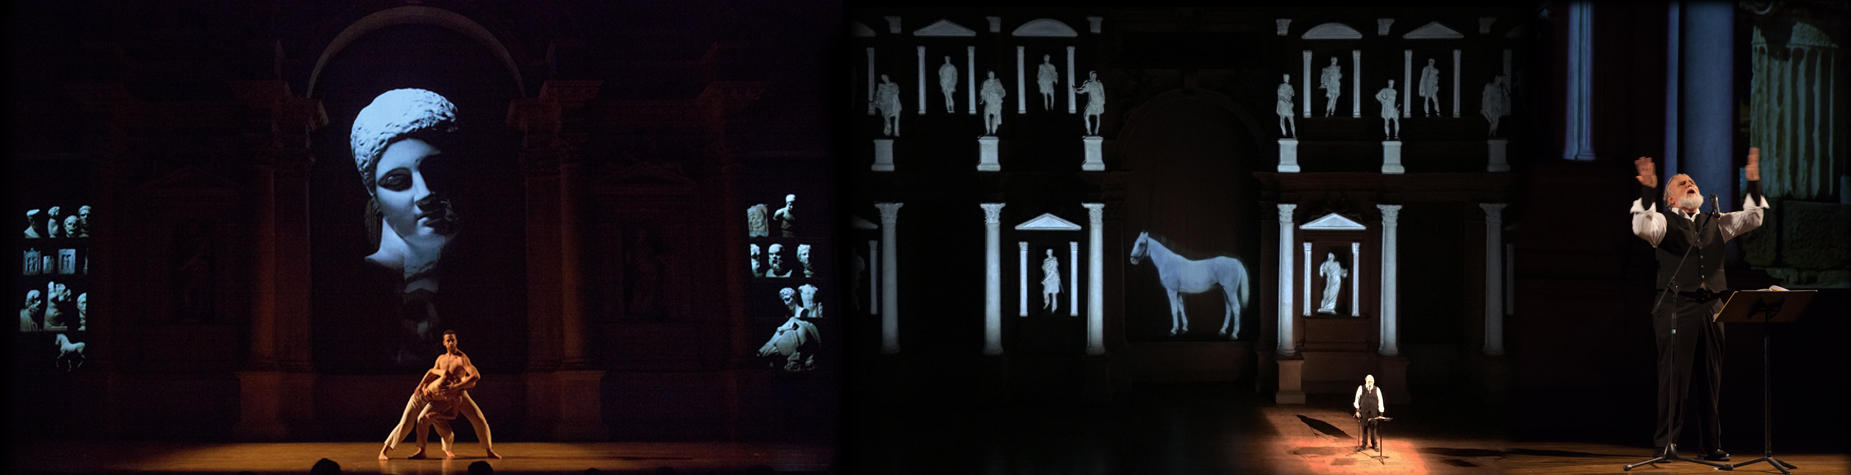 Delfi, cantata - Moni Ovadia e danzatori a teatro e proiezioni di sculture classiche